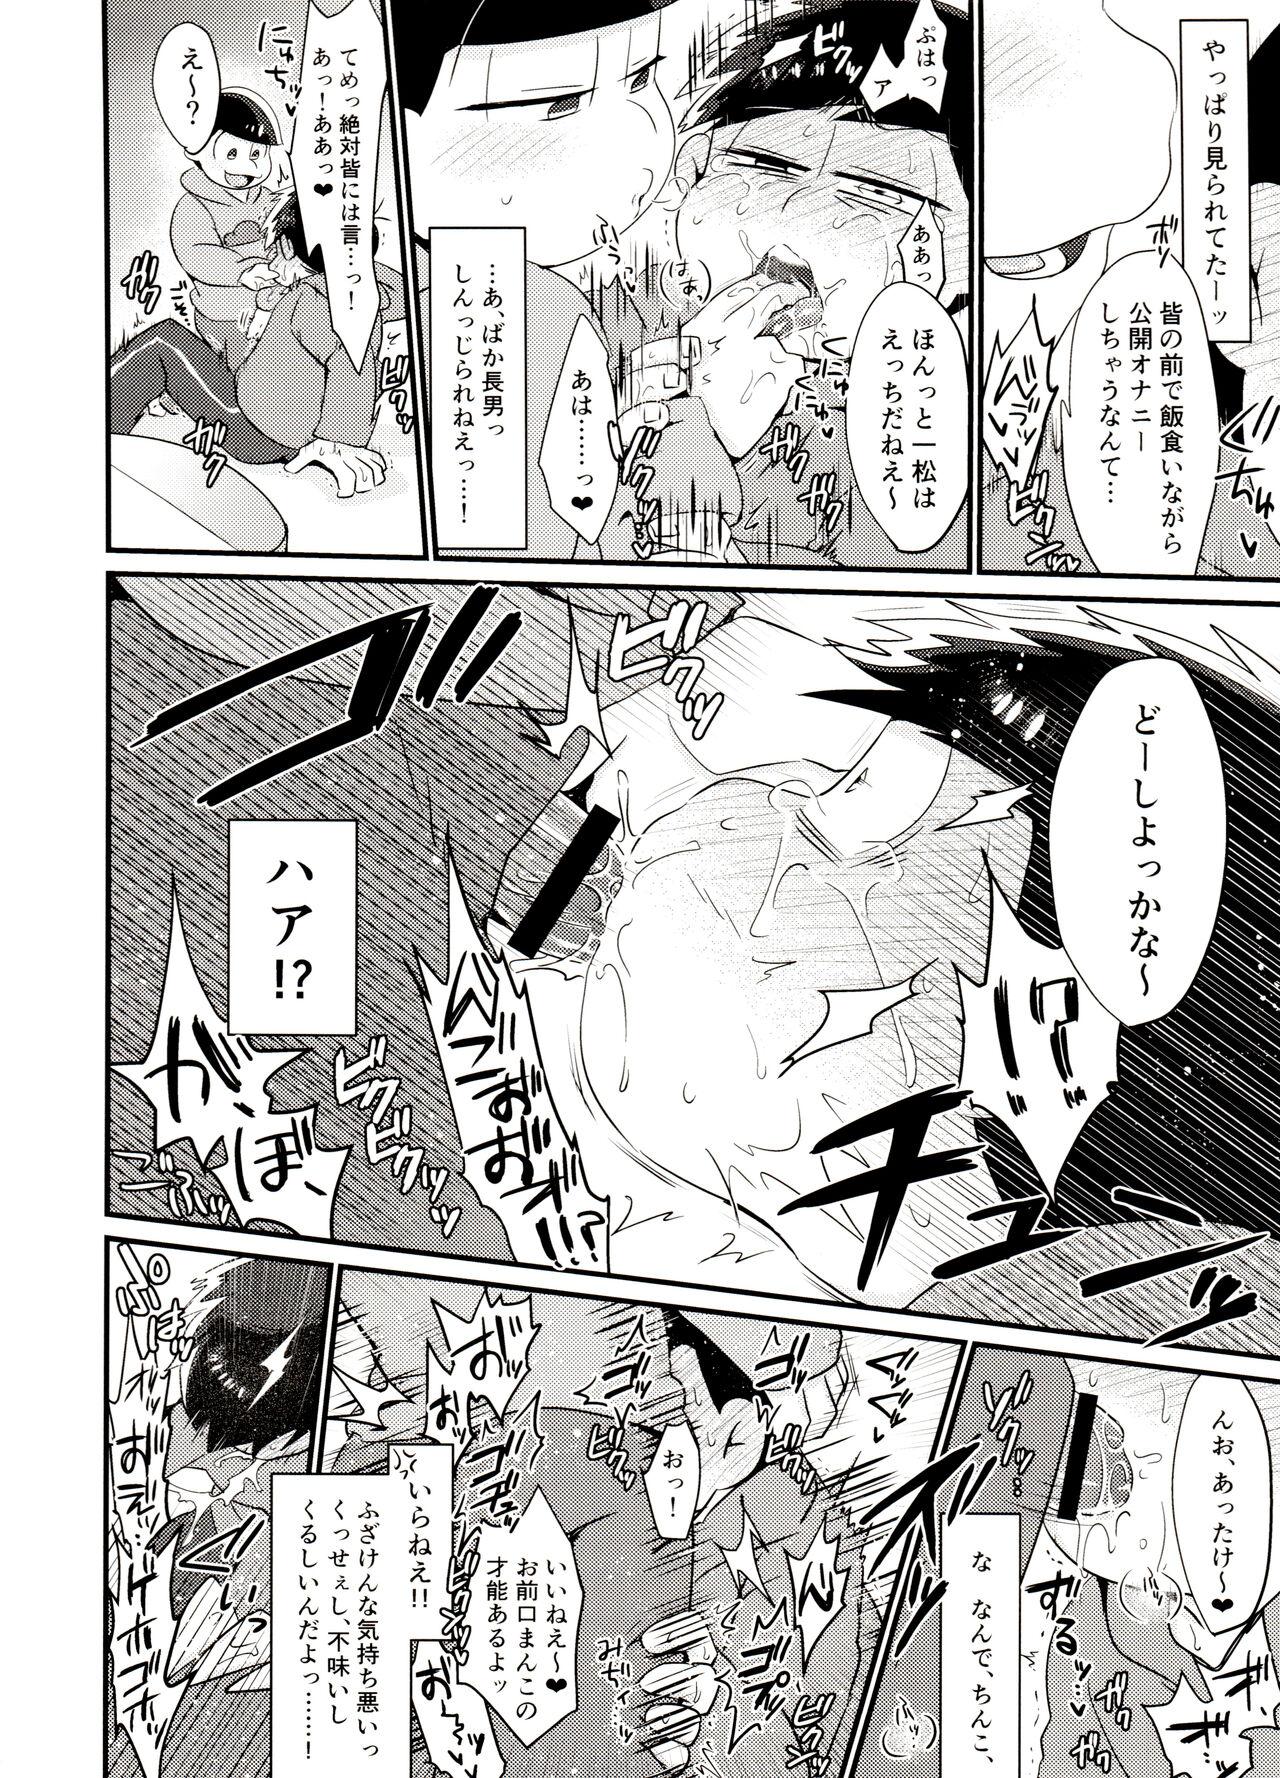 Desperate Ore no shita ga saikin okashī!! - Osomatsu san Gostosas - Page 9